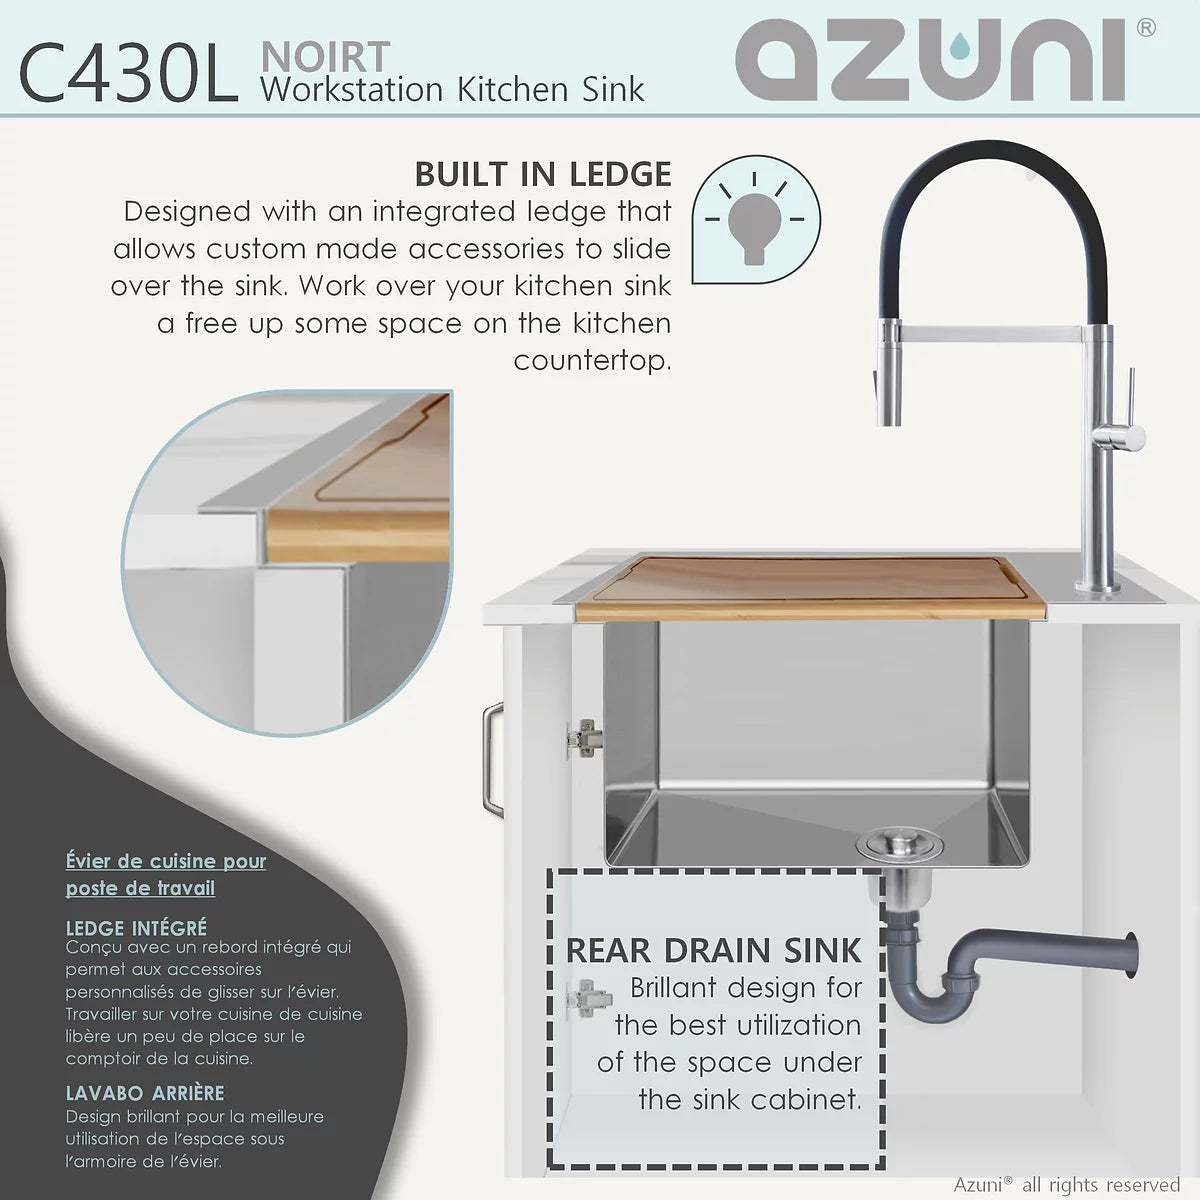 Azuni 31" x 20.5" Noirt Workstation Single Bowl Kitchen Sink Stainless Steel C430l